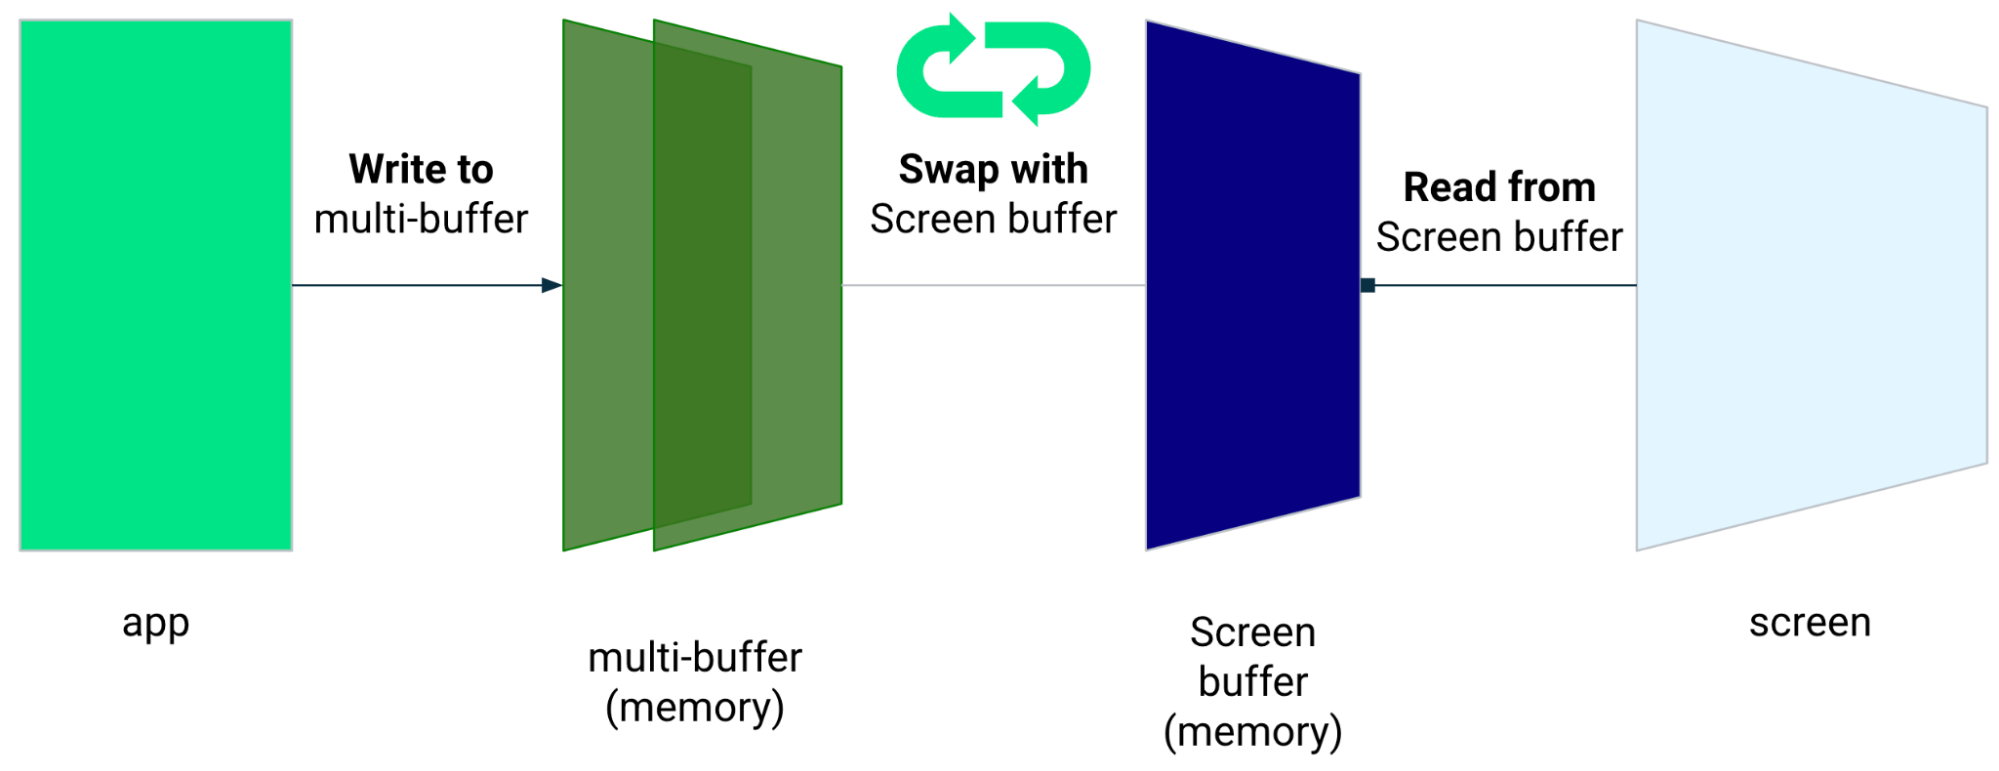 L&#39;app scrive sul buffer multi-buffer, che viene scambiato con il buffer dello schermo. L&#39;app legge dal buffer dello schermo.